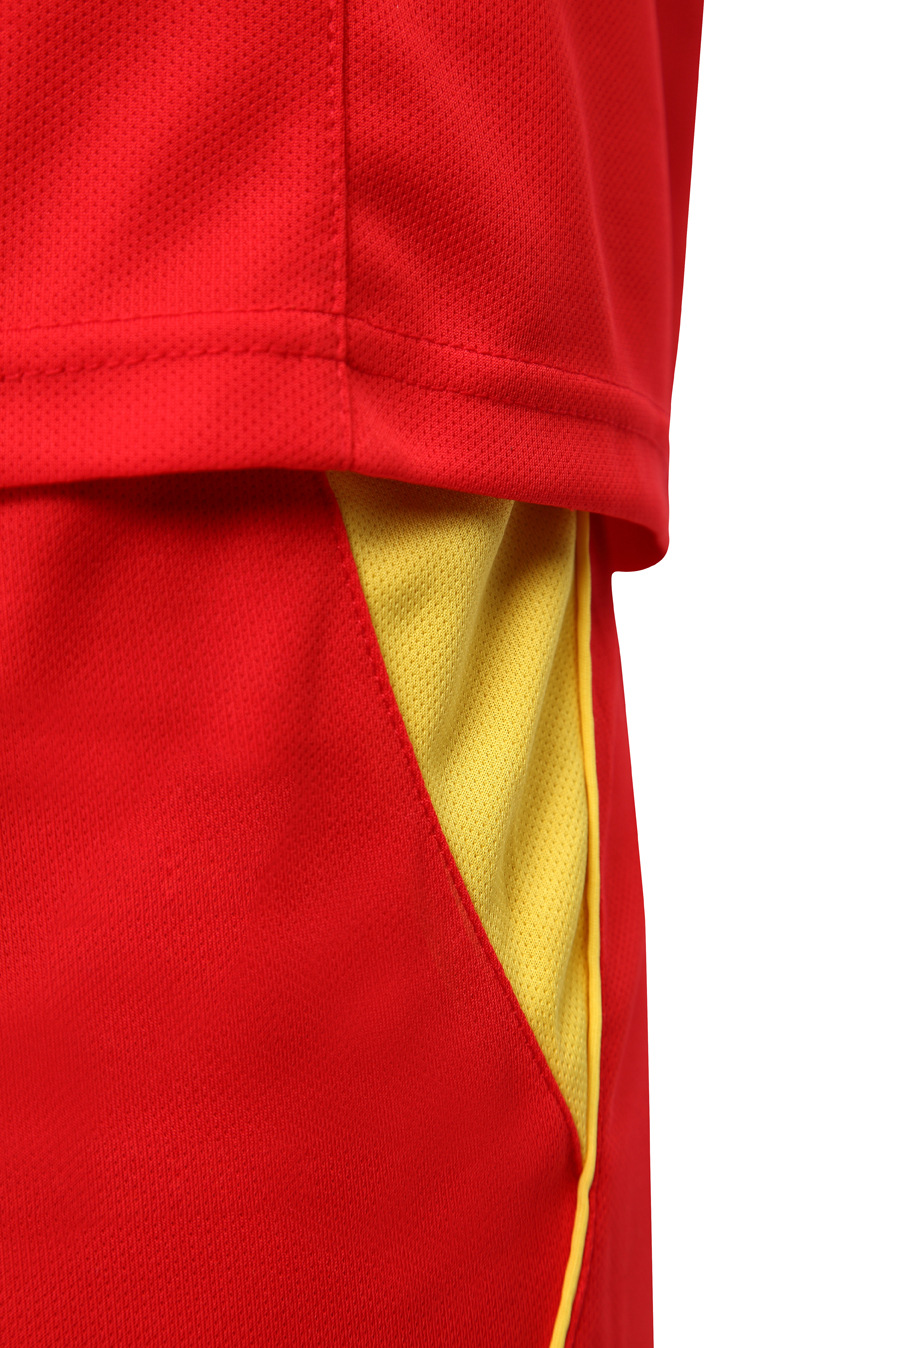 足球服-2019光板足球服套装运动服训练服背心